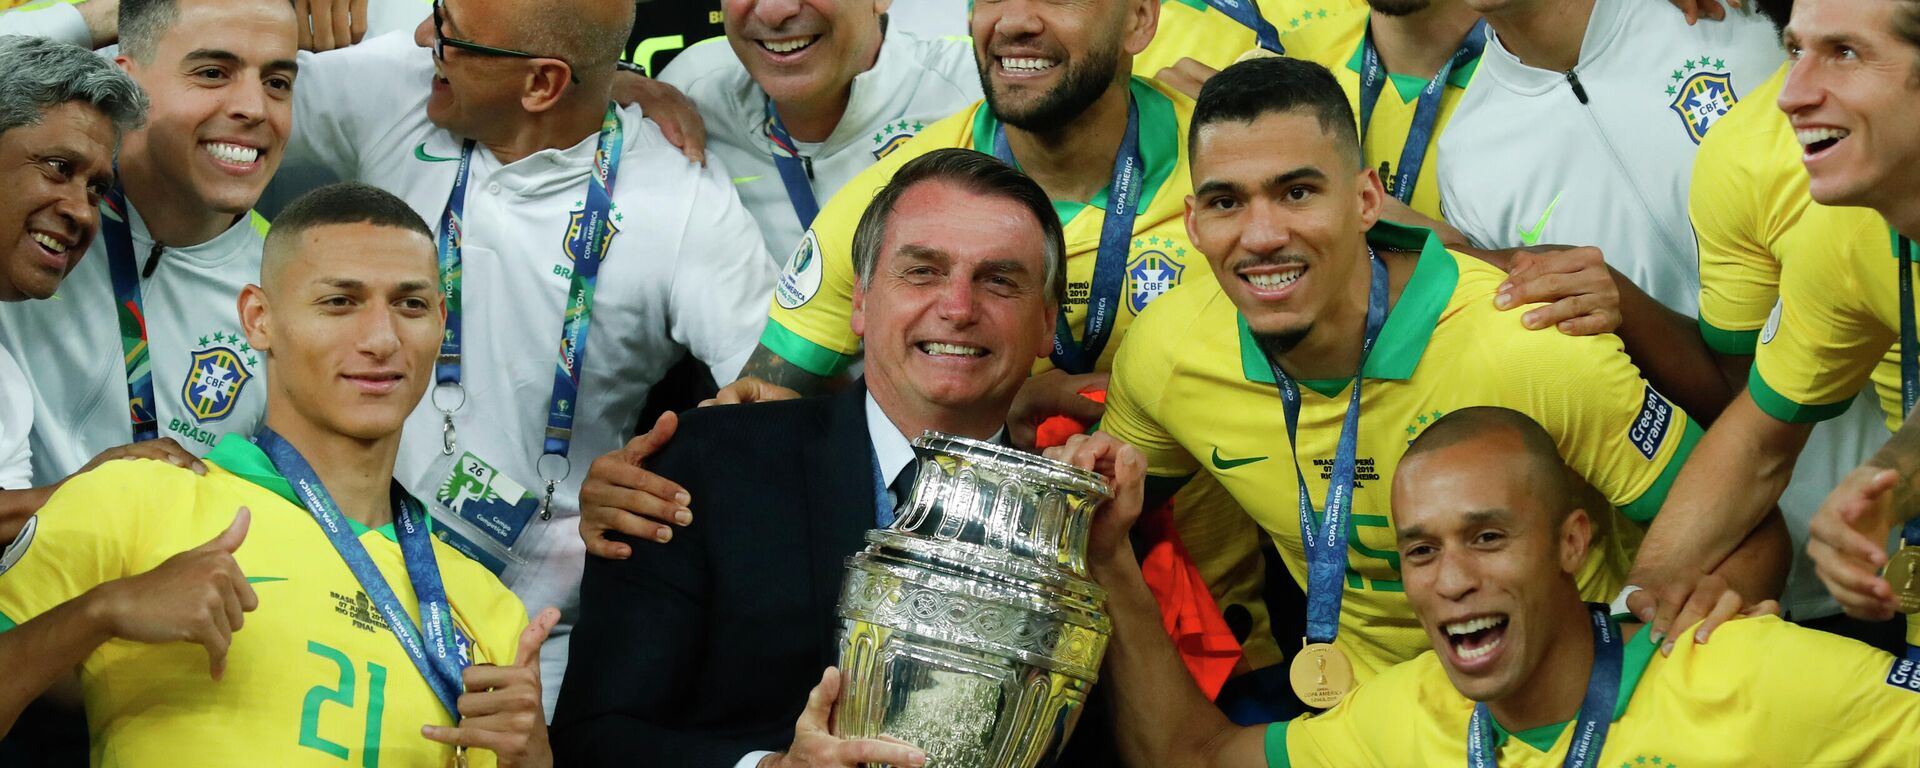 El presidente de Brasil, Jair Bolsonaro, sostiene el trofeo de la Copa América 2019, ganada por la selección brasileña - Sputnik Mundo, 1920, 31.05.2021